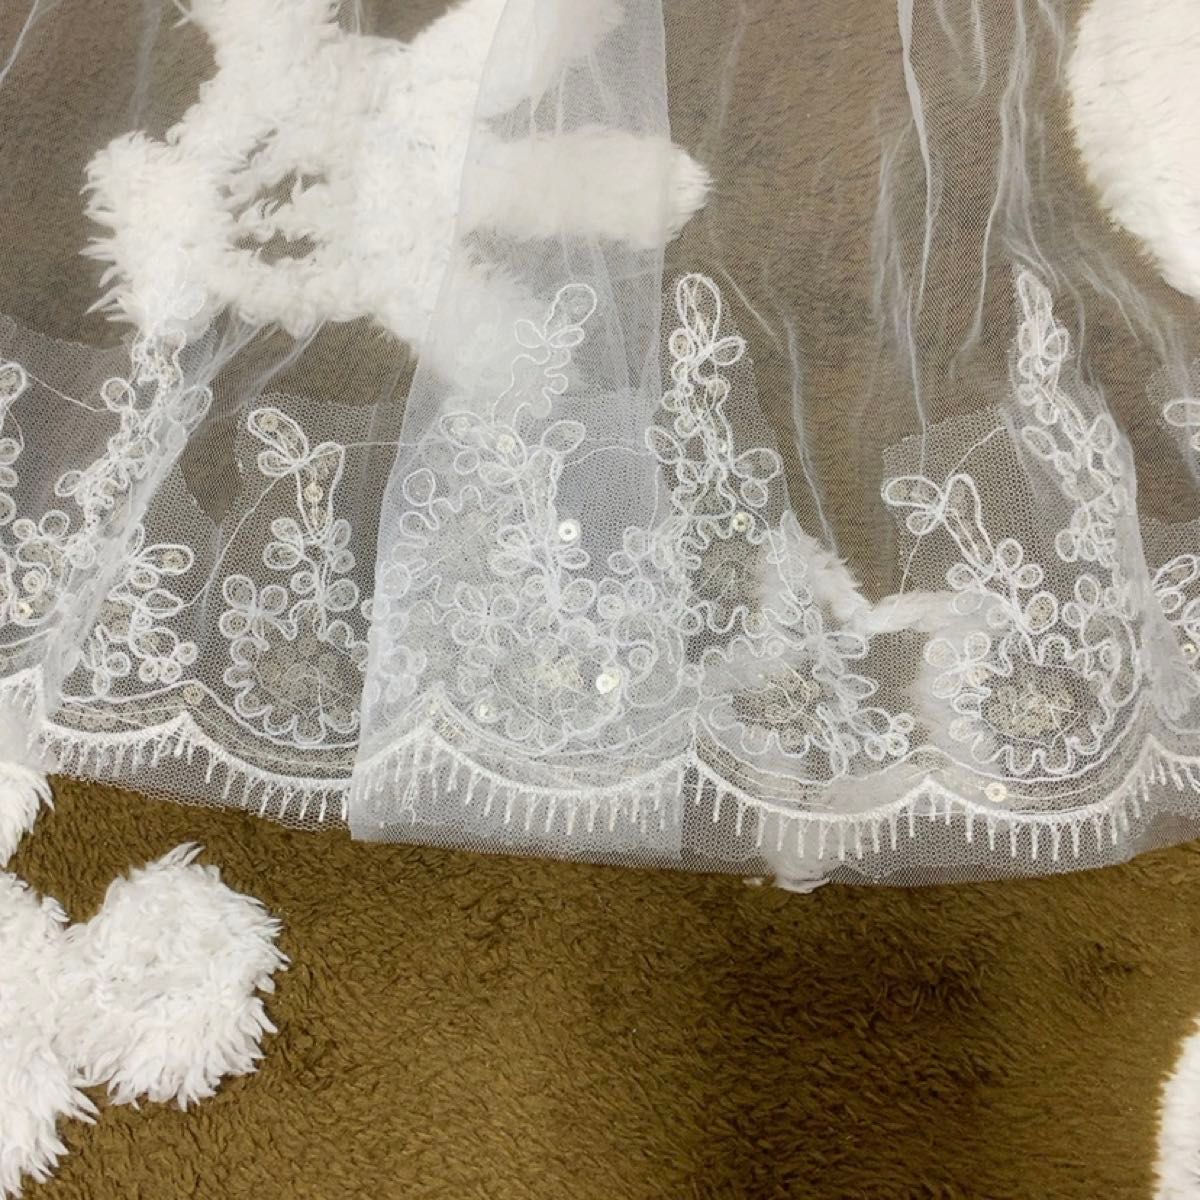 ブライダル ウェディングベール スパンコール 刺繍 ベール ドレス オフホワイト 結婚式 ウェディングドレス